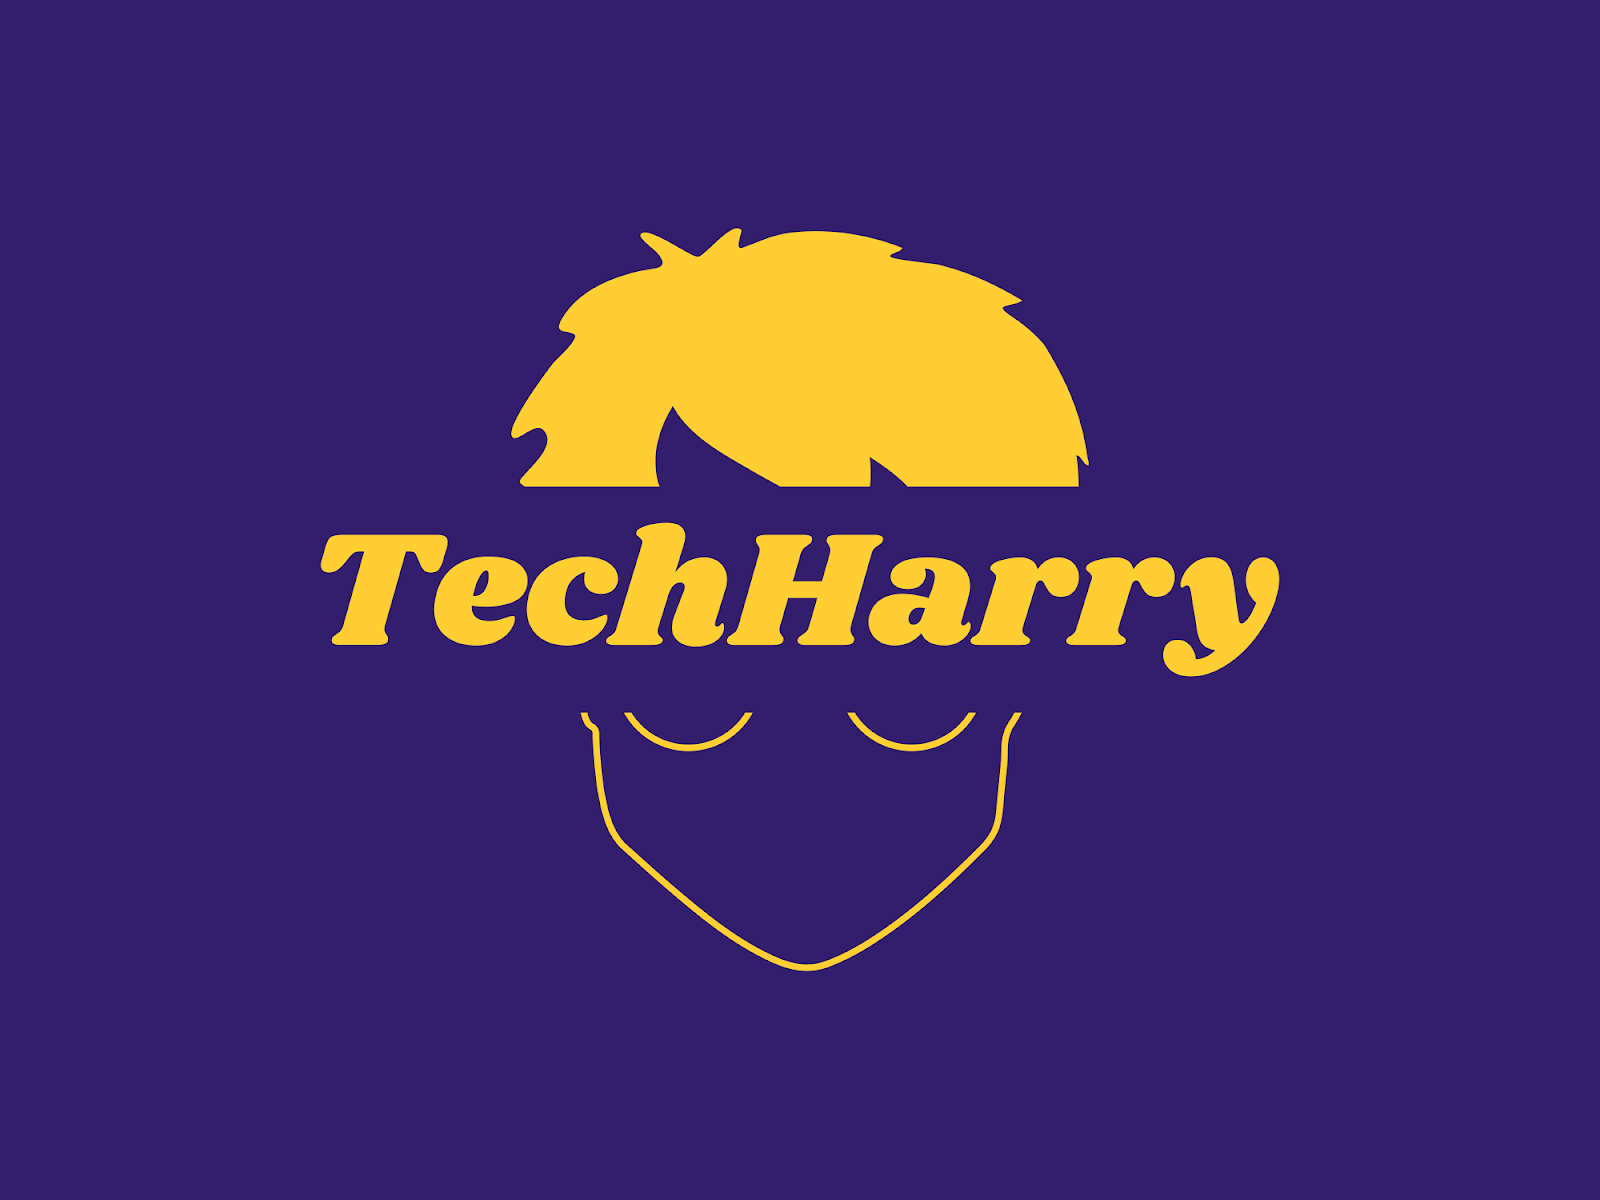 TechHarry